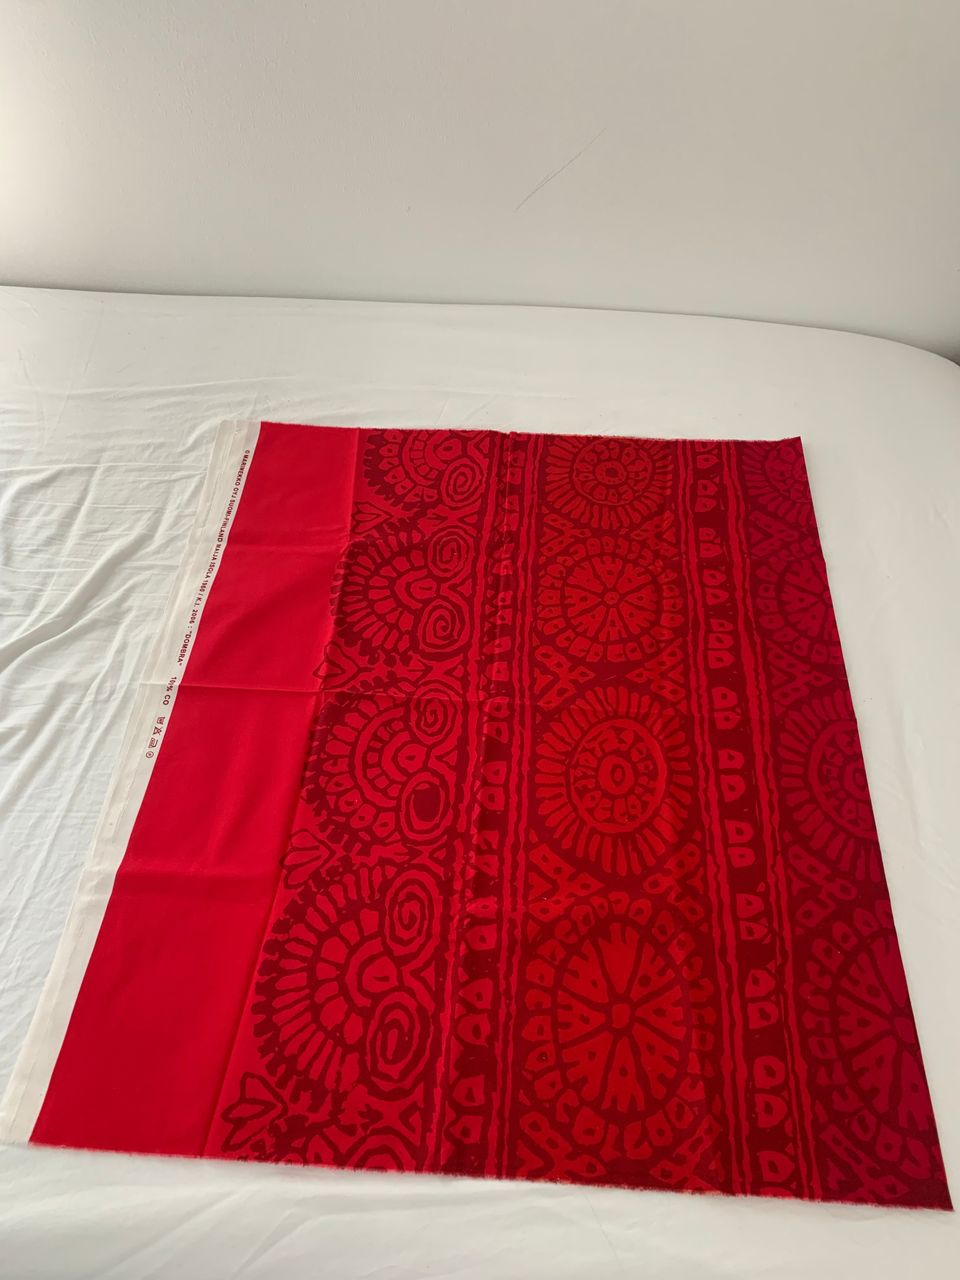 Marimekko Dombra kangas, 145 x 84 cm, uusi